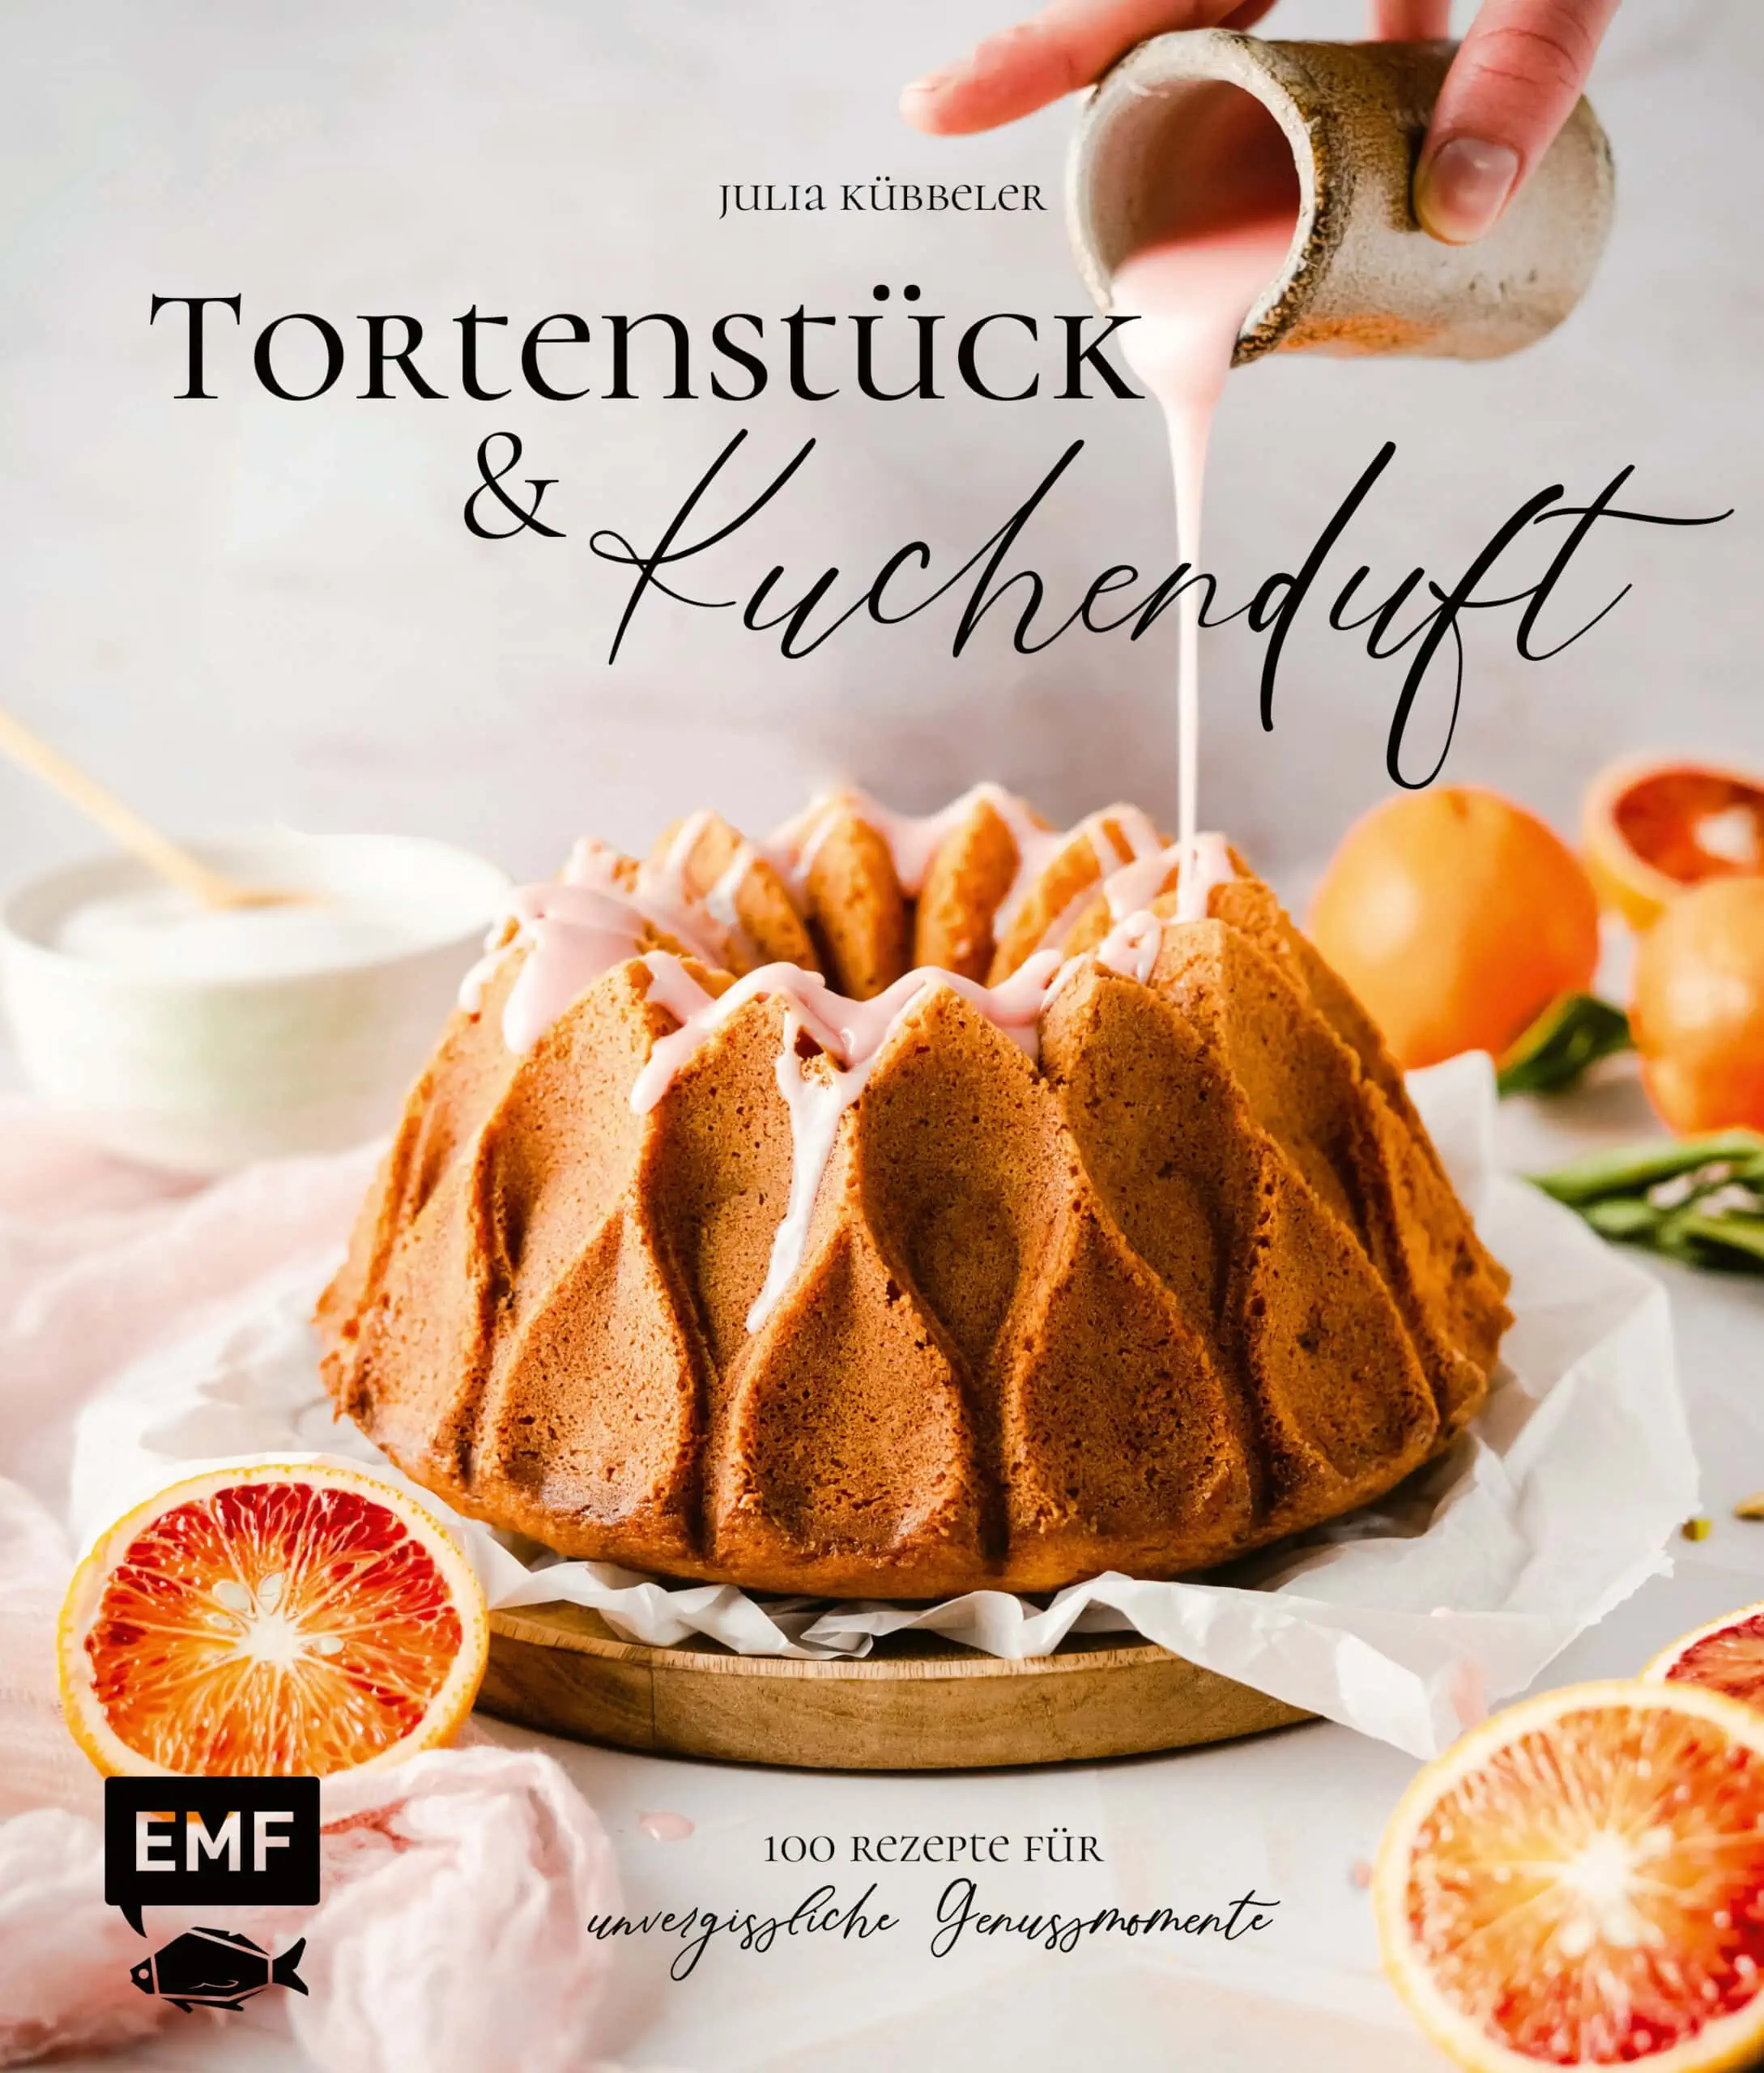 Quarkbällchen Aus Tortenstück Und Kuchendurf // Himbeer